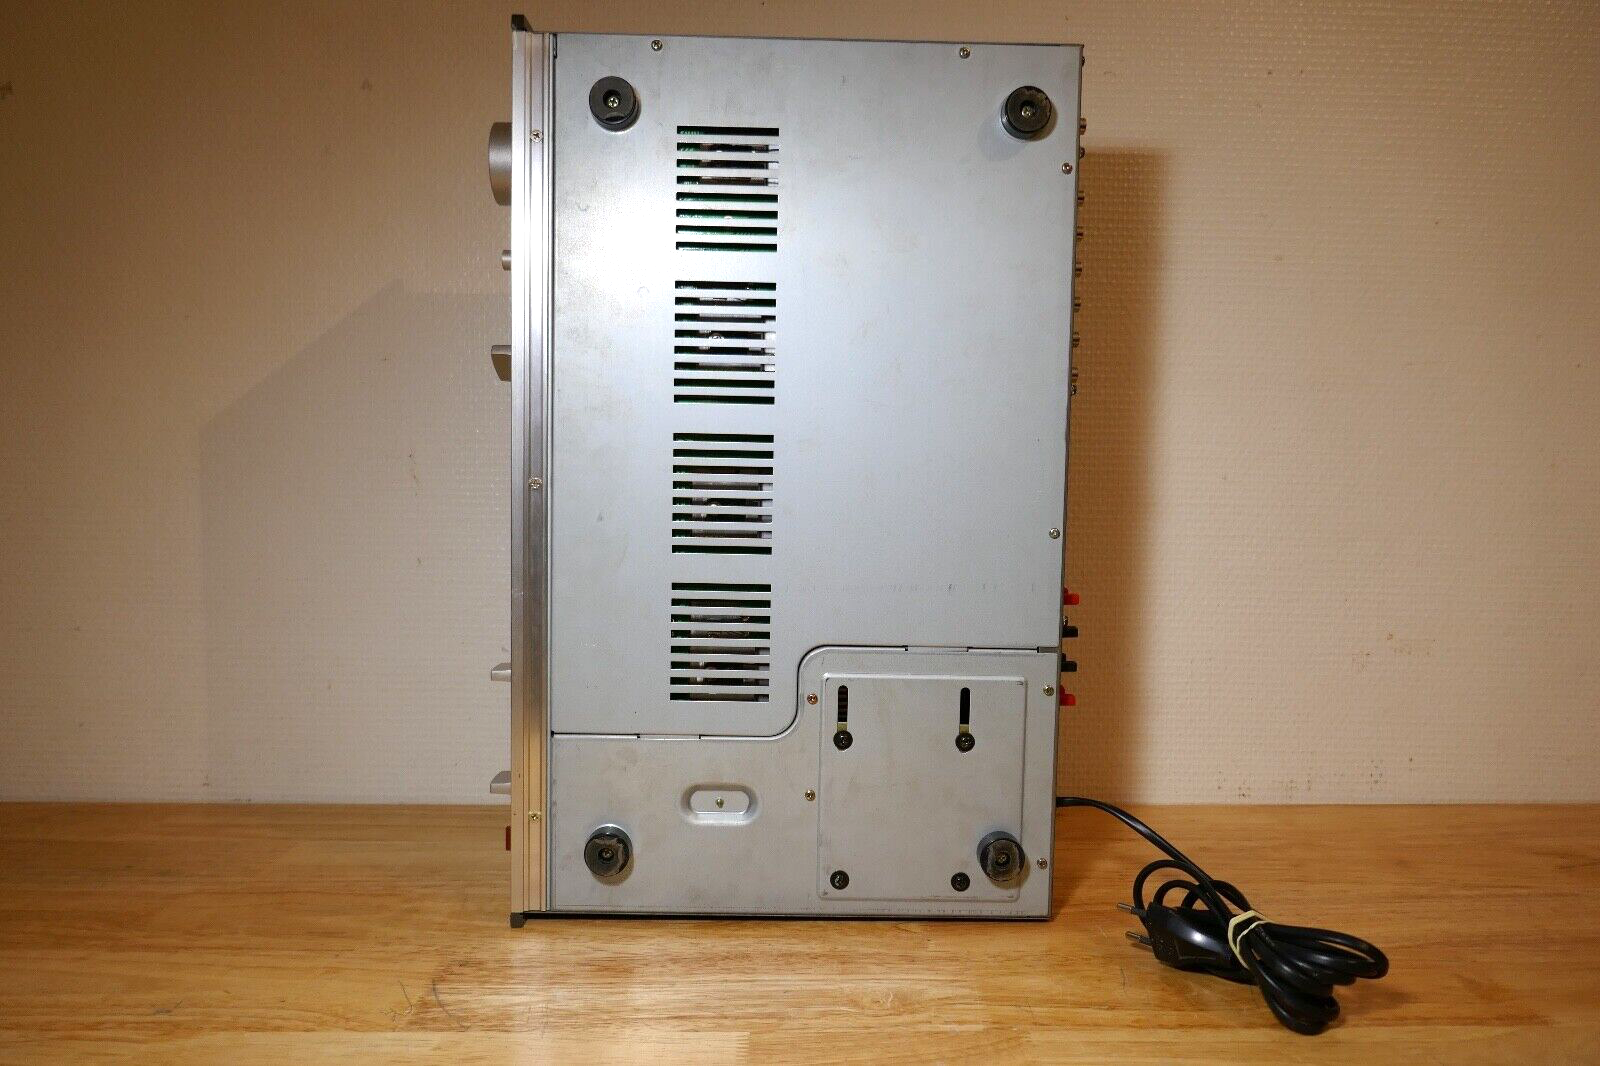 amplificateur amplifier LUXMAN l-220 vintage occasion